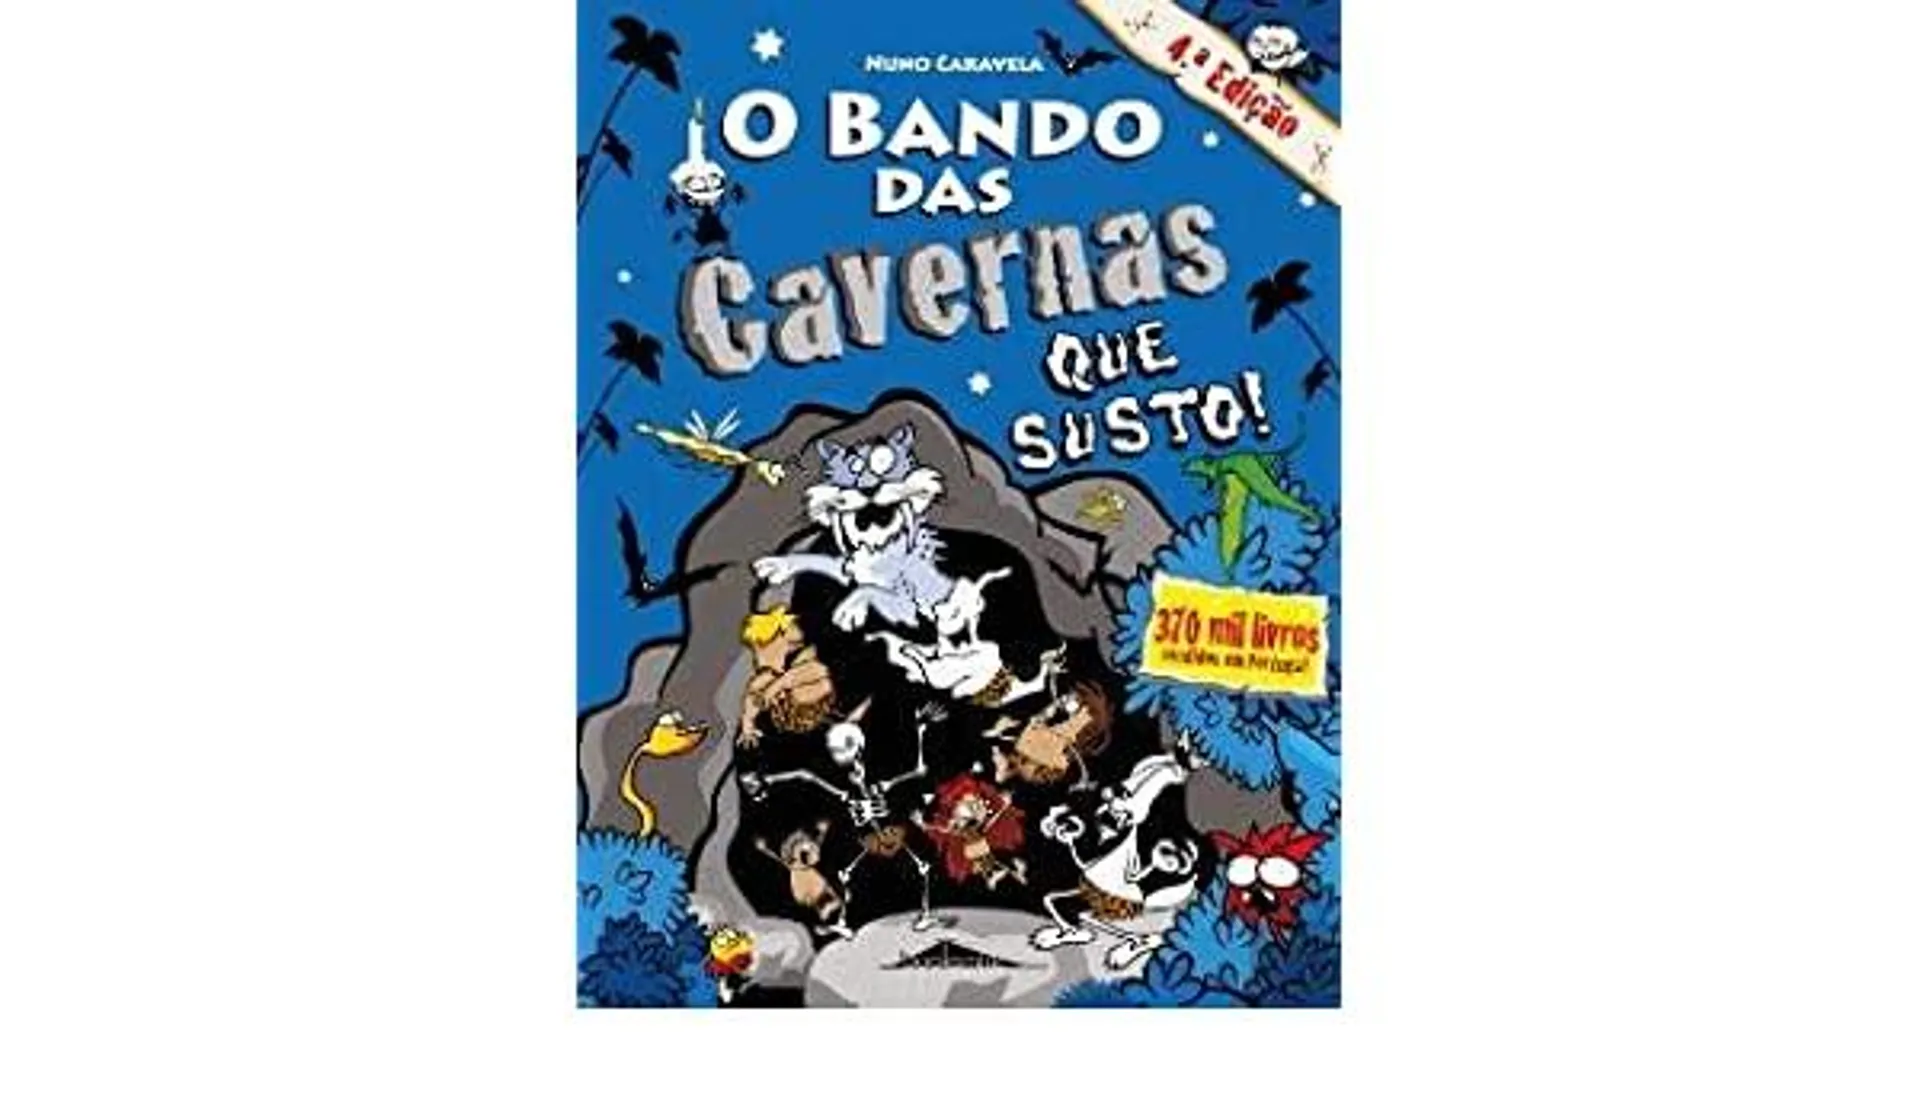 O Bando das Cavernas N.º 19 de Nuno Caravela Que Susto! (4ª Edição)